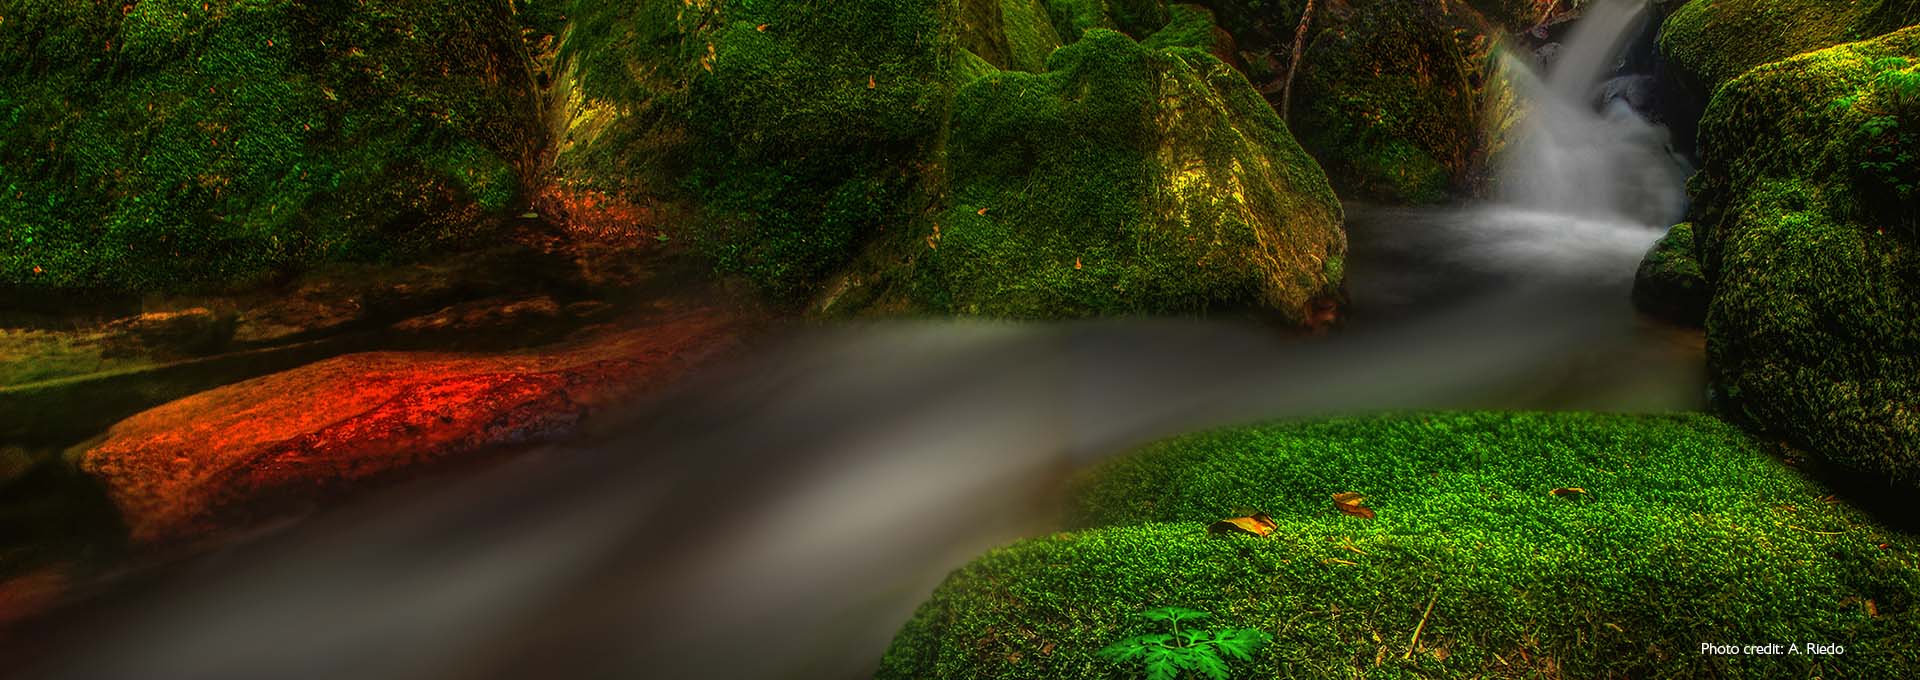 Bernafon Alpha işitme cihazı kullanıcıları tarafından fotoğraflanan, parlak yeşil renkli yosunlarla kaplı kayaların arasındaki küçük bir derenin akışının görüntüsü 